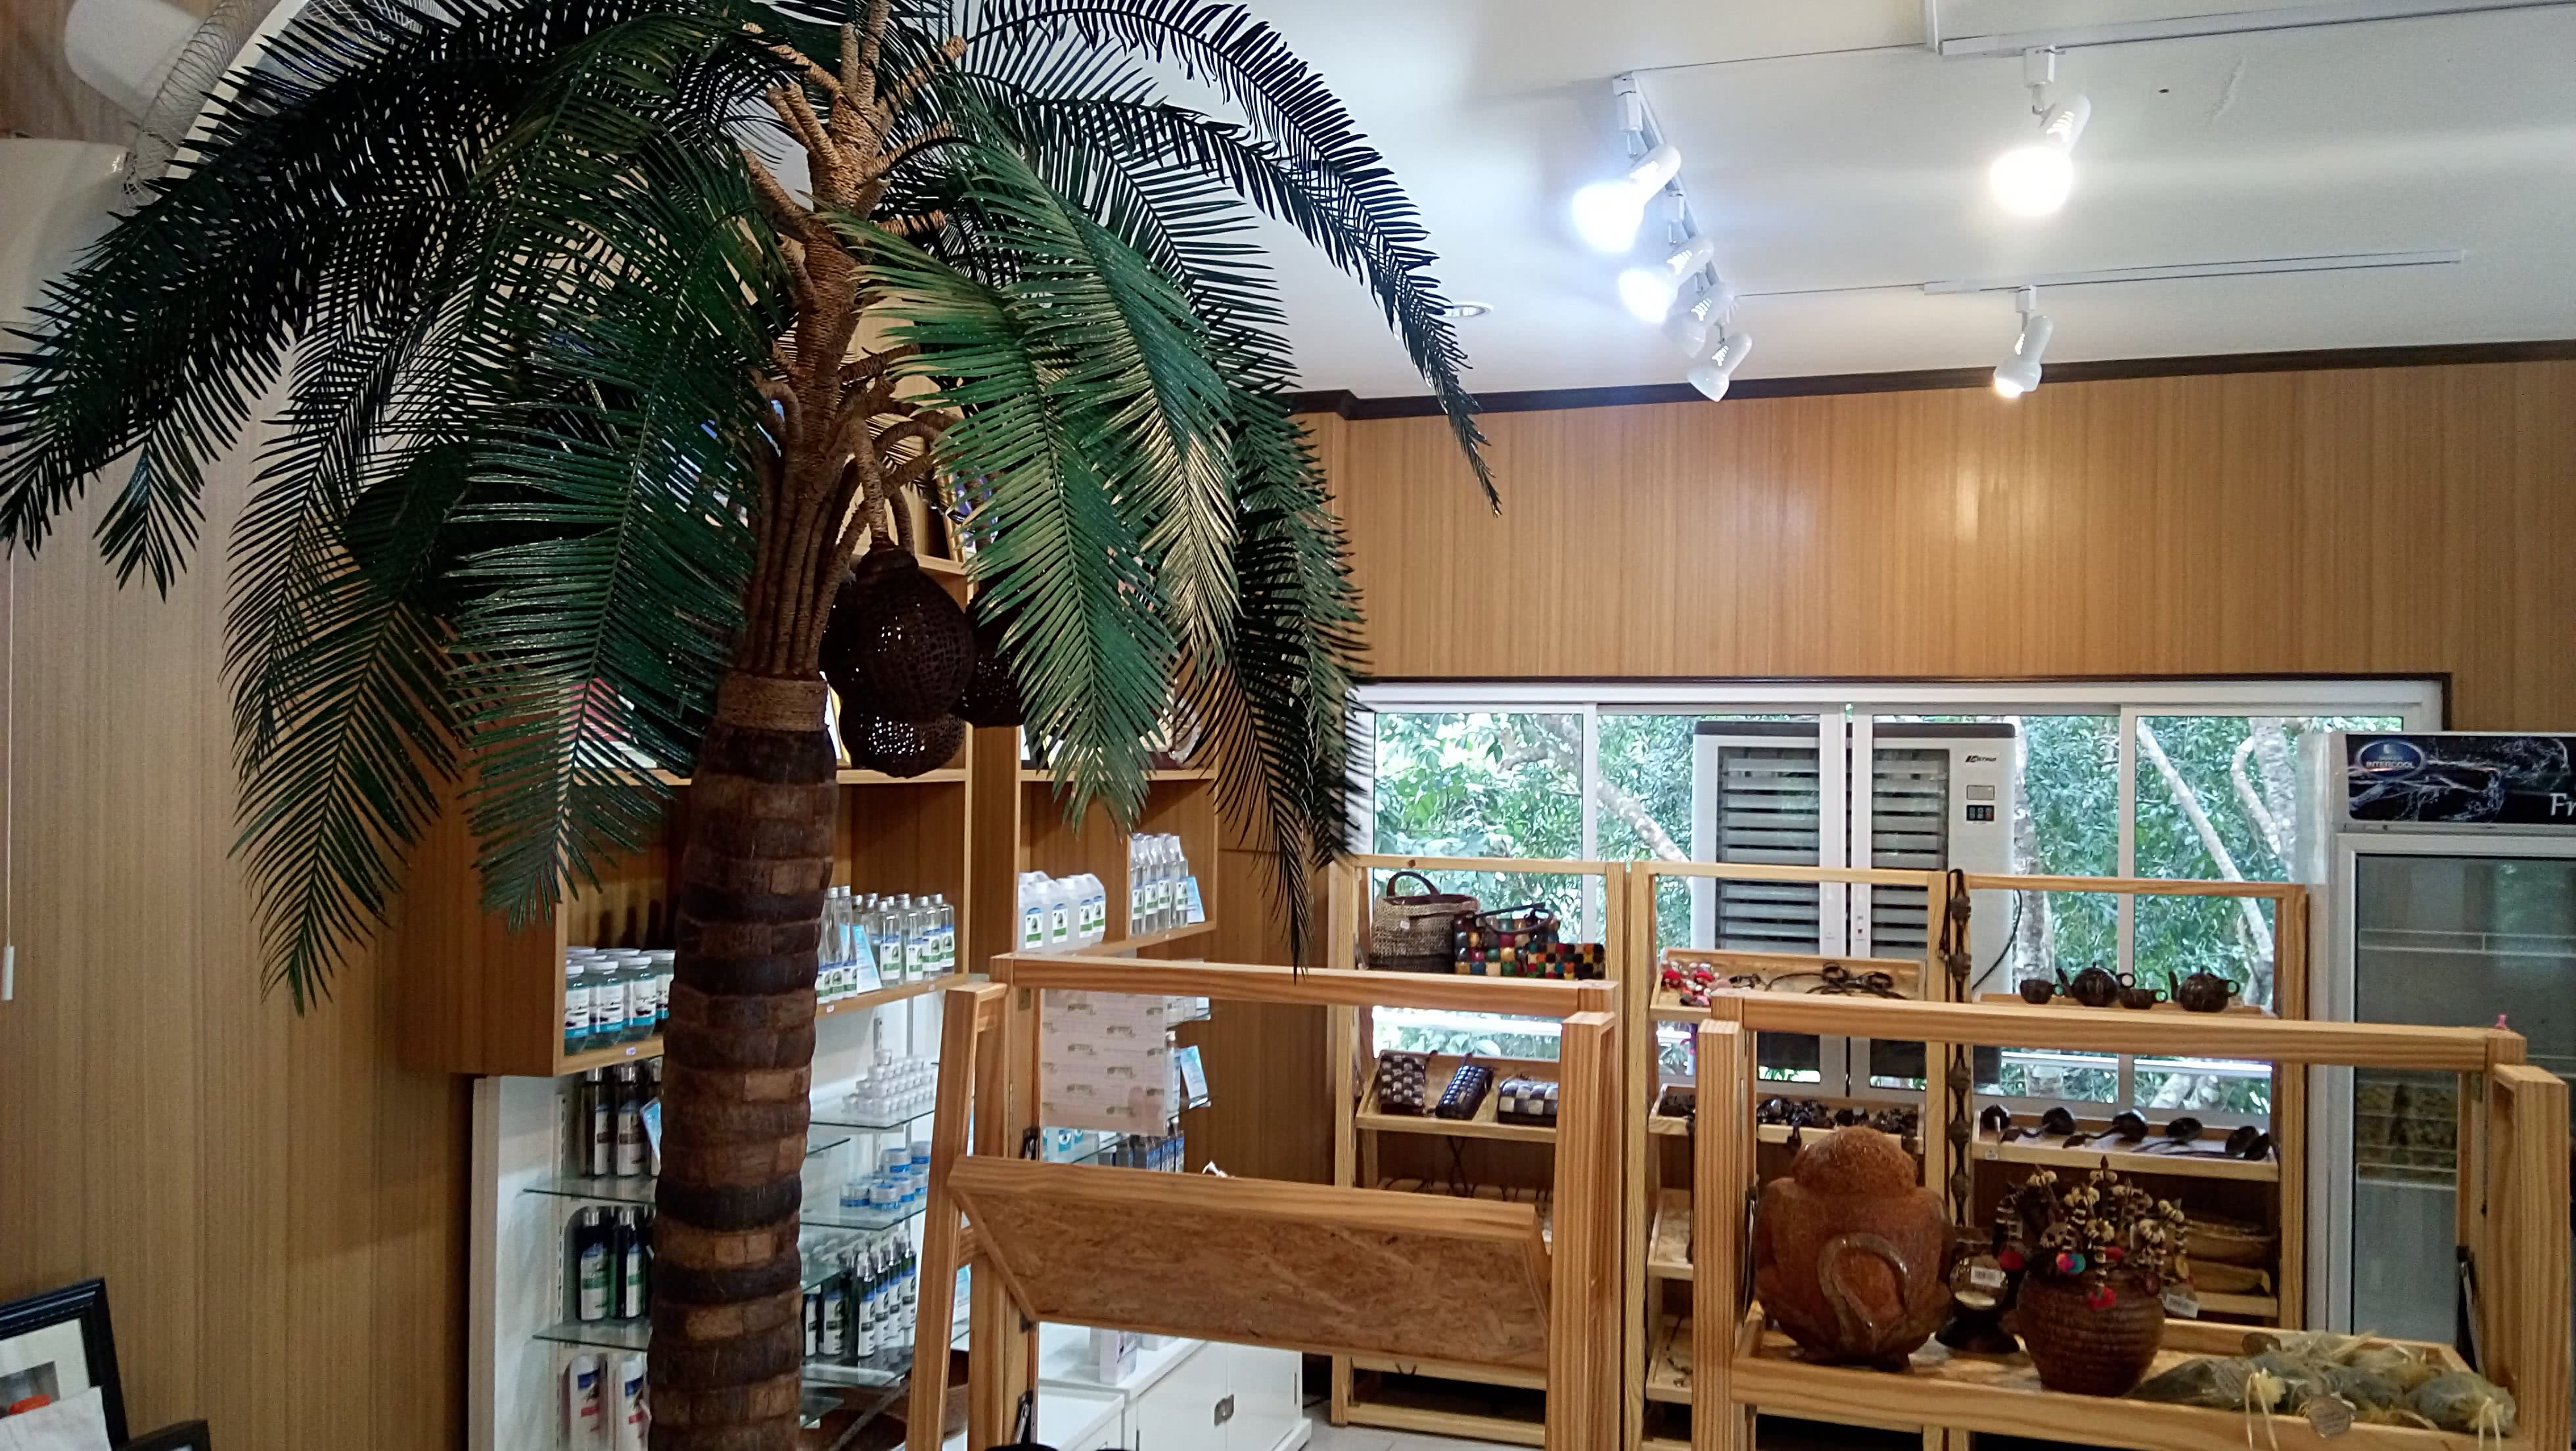 Coconut museum, Koh Samui, Thailand